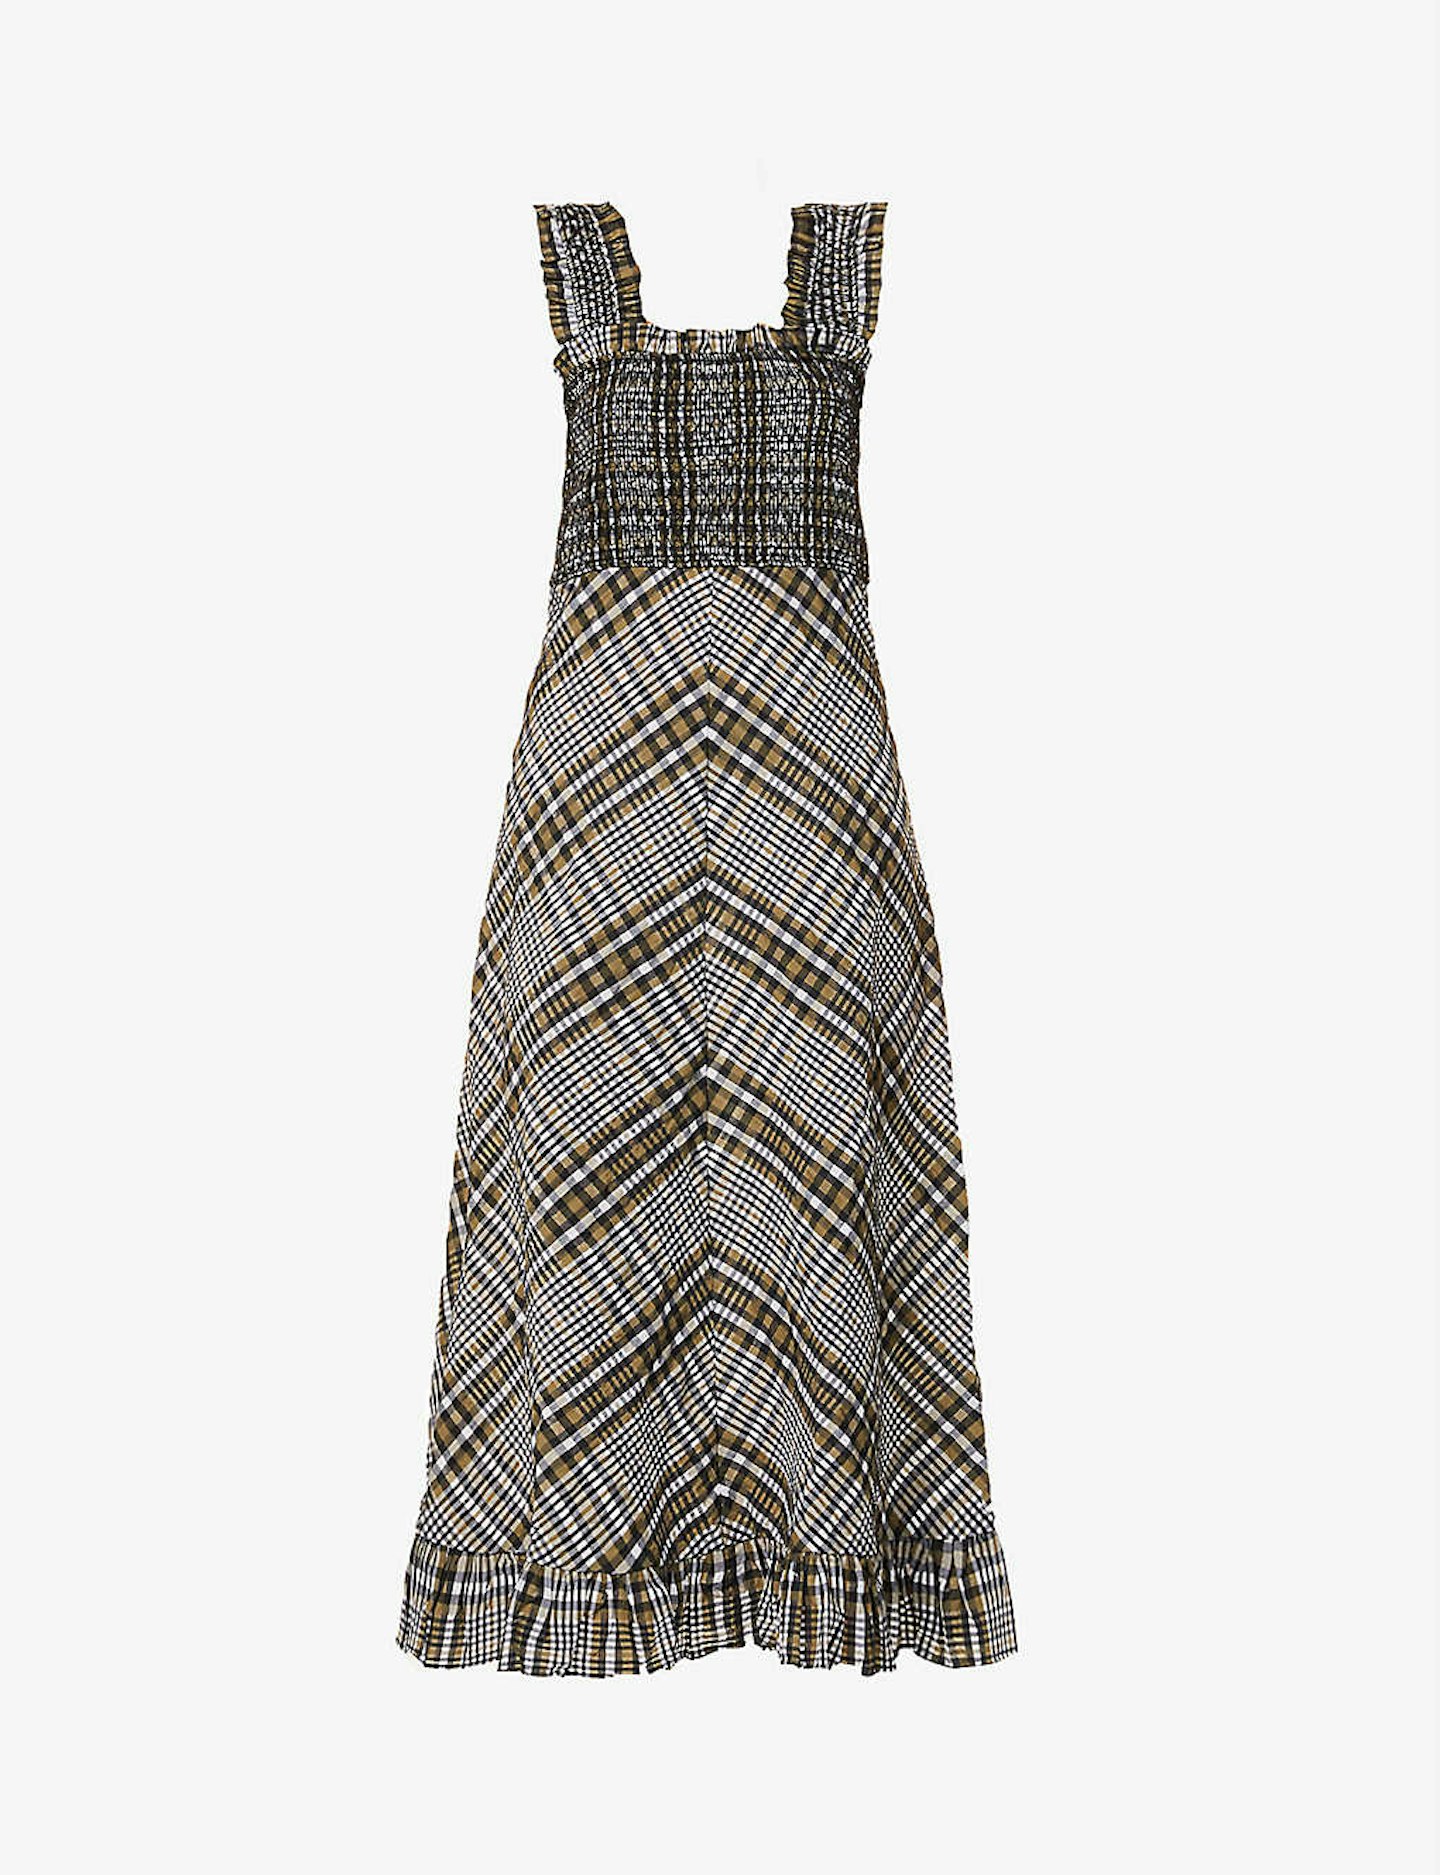 Ganni, Seersucker-Check Cotton-Blend Midi Dress, £215